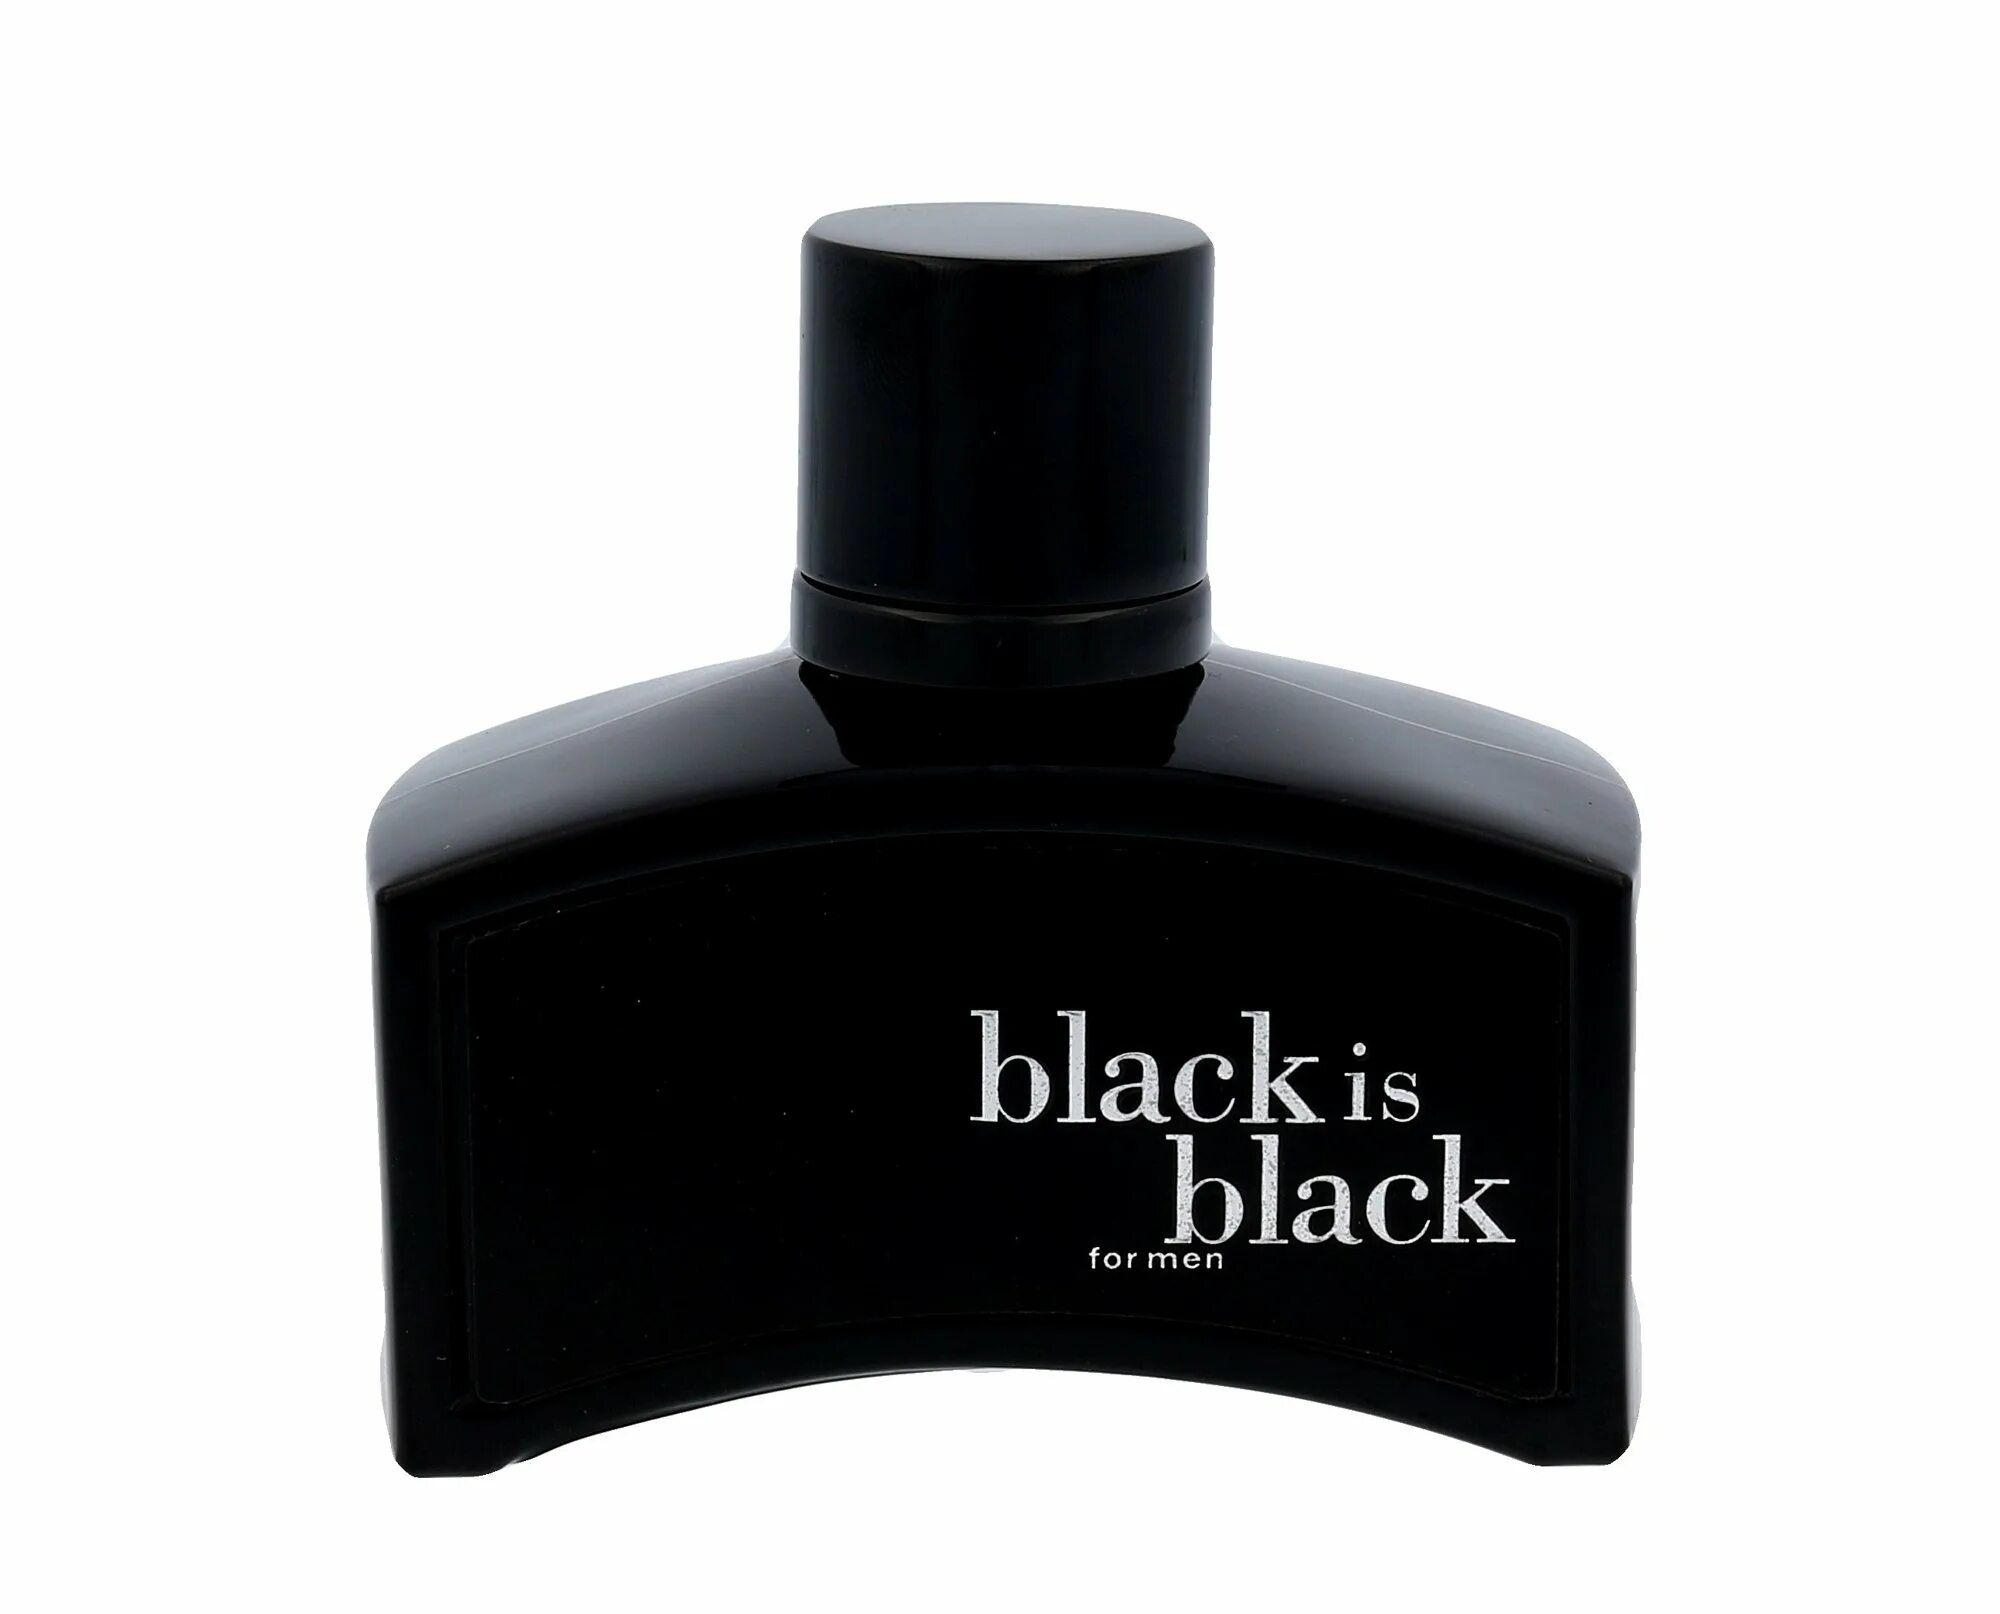 Uniflame духи. Духи Блэк ИС Блэк. Духи Black is Black e6. Black is Black Uniflame духи. Black is Black 60 ml духи мужские.